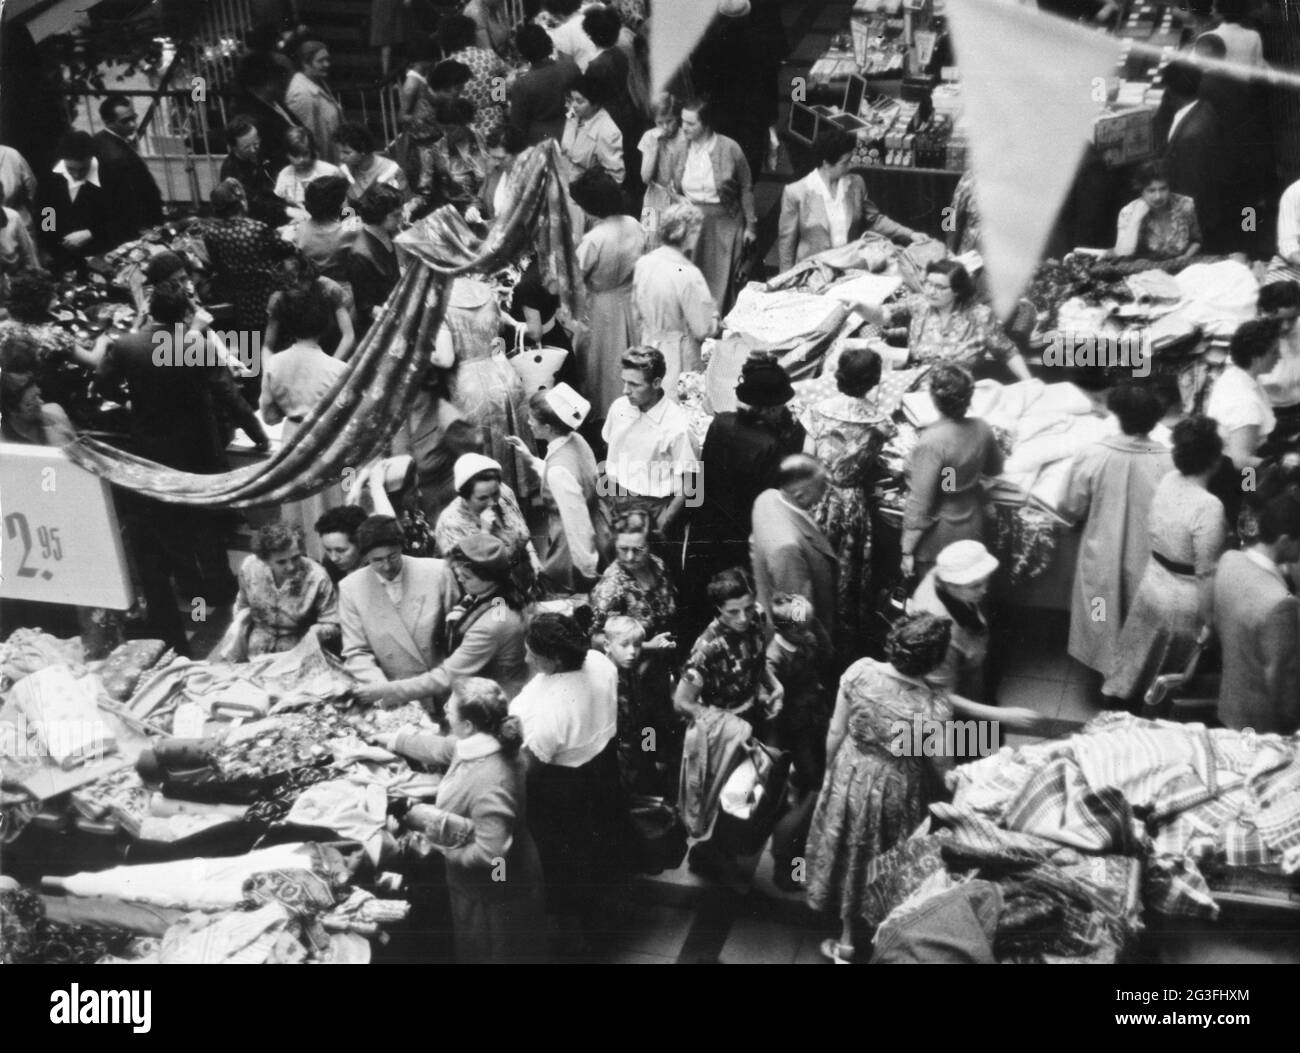 commercio, negozi, grandi magazzini, grandi magazzini, vendita estiva, 1960, INFORMAZIONI-AGGIUNTIVE-DI-AUTORIZZAZIONE-DIRITTI-NON-DISPONIBILI Foto Stock